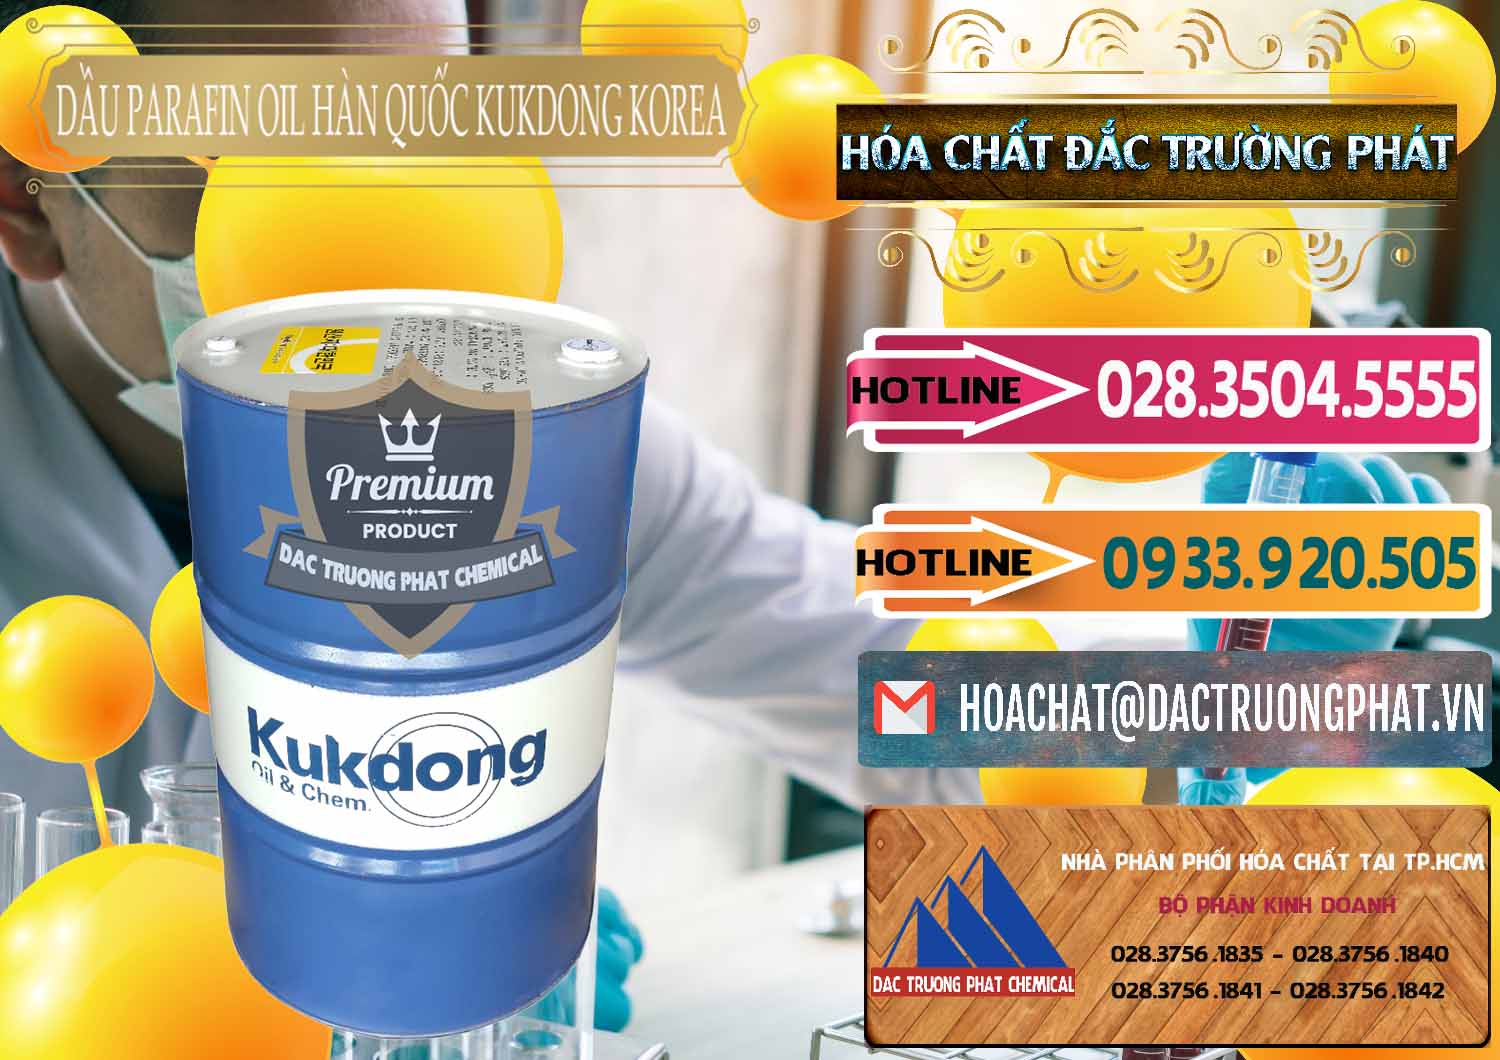 Công ty bán _ cung ứng Dầu Parafin Oil Hàn Quốc Korea Kukdong - 0060 - Đơn vị chuyên kinh doanh _ cung cấp hóa chất tại TP.HCM - dactruongphat.vn